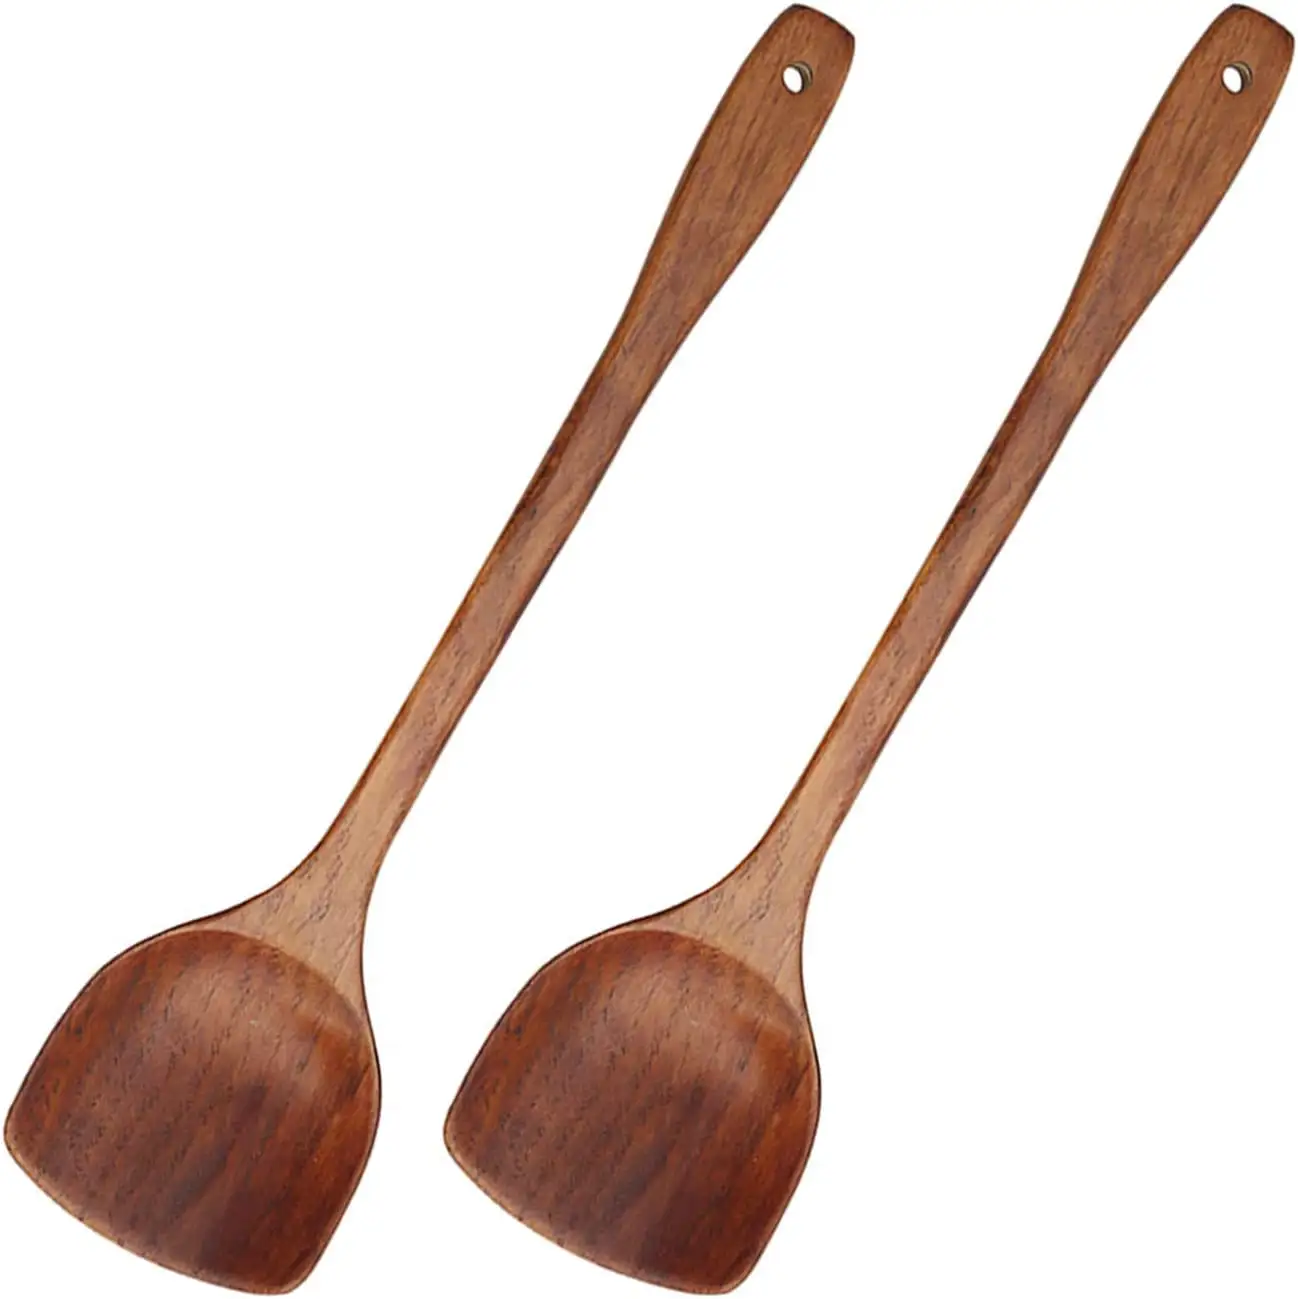 Espátula de madera todo en uno, utensilios de cocina antiadherentes de madera dura duraderos para mezclar y cocinar, 2 piezas